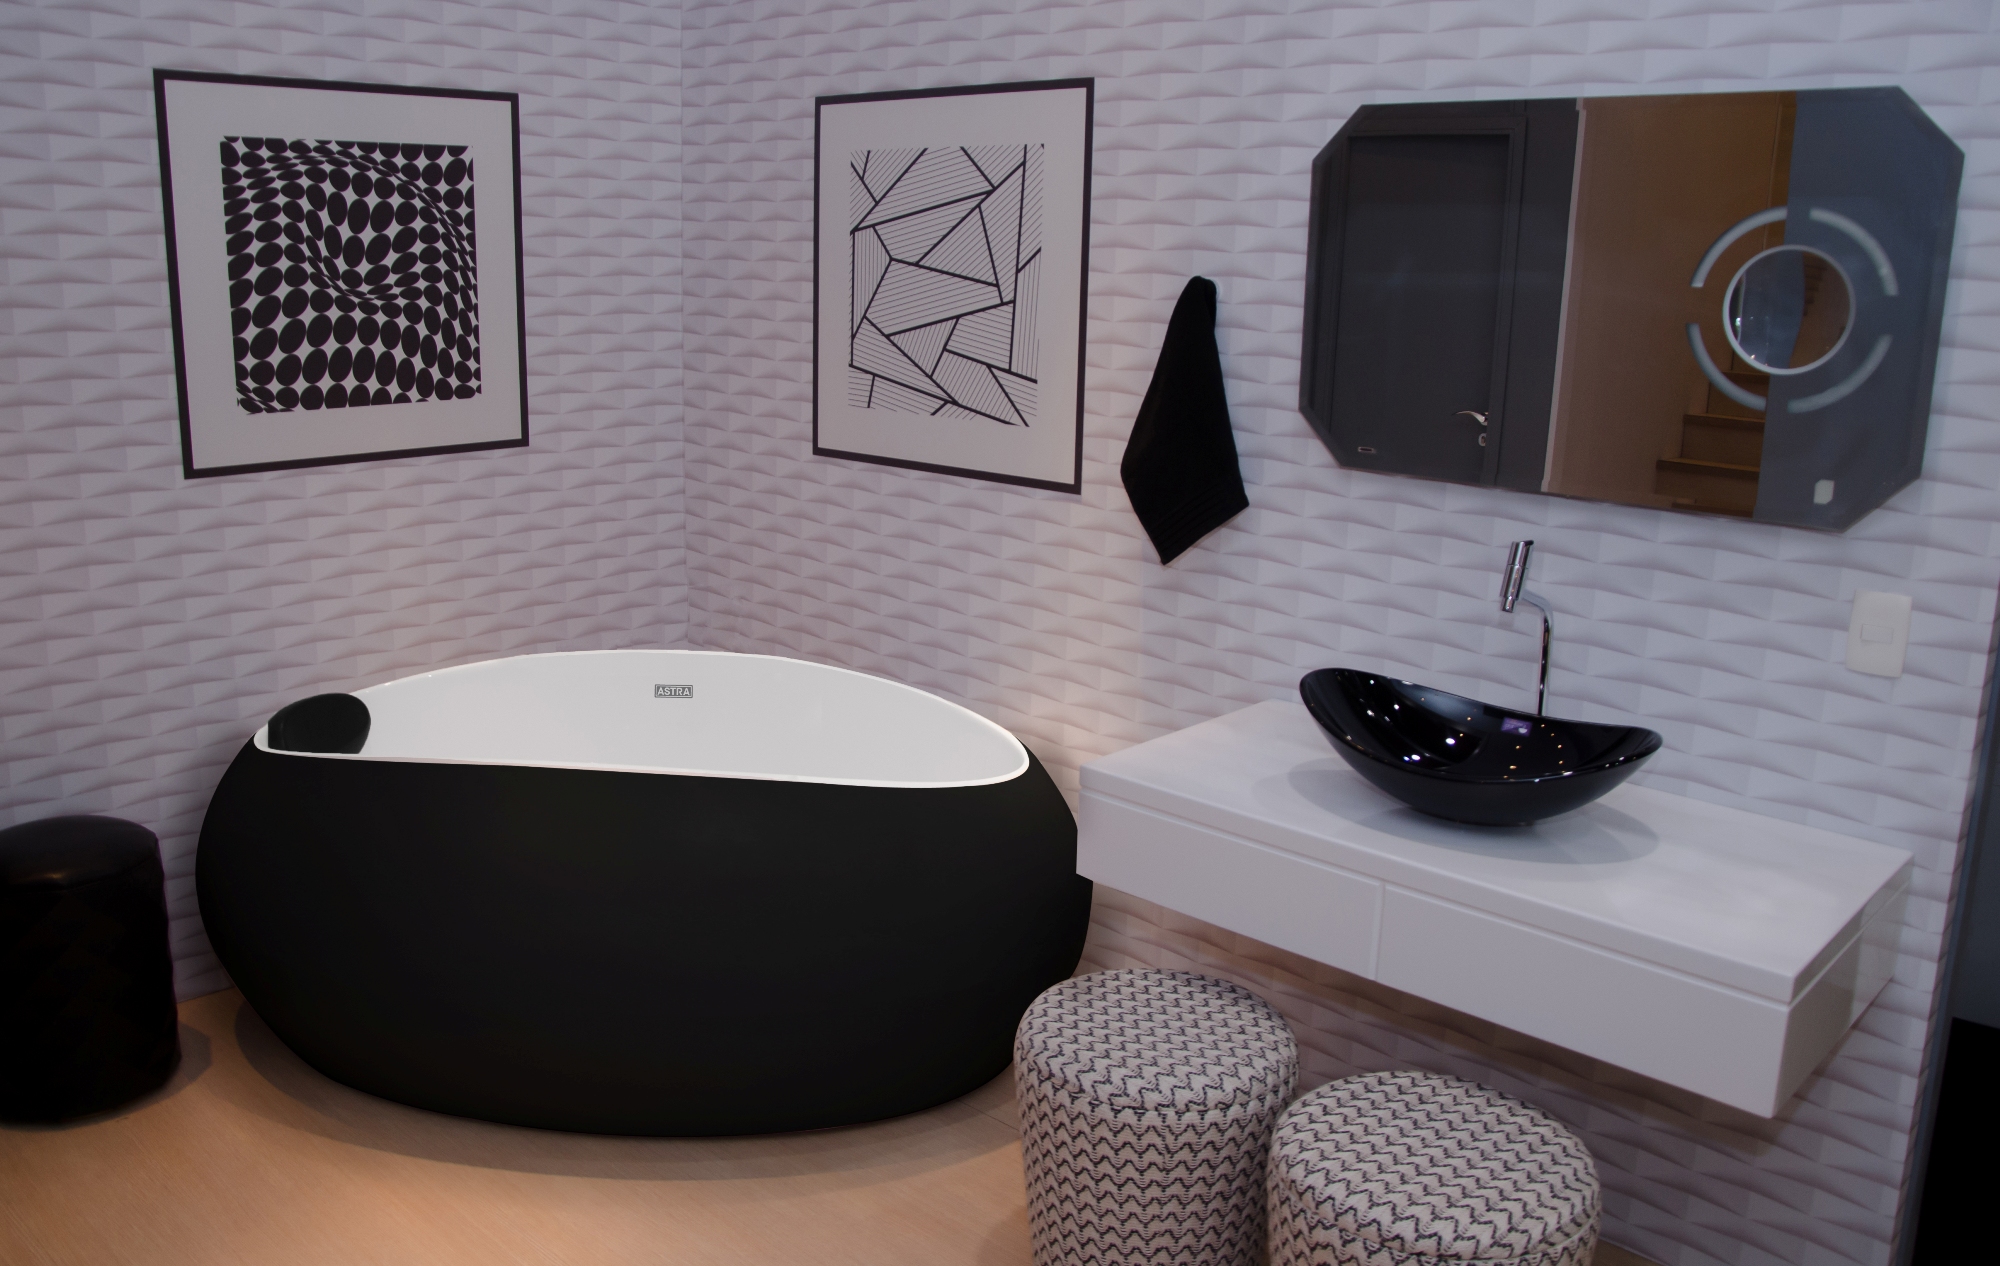 A imagem mostra um banheiro com uma banheira oval preta, em material que a deixa fosca. A banheira está instalada no canto entre duas paredes. Ao lado direito dela, há uma cuba preta, instalada em um gabinete branco.